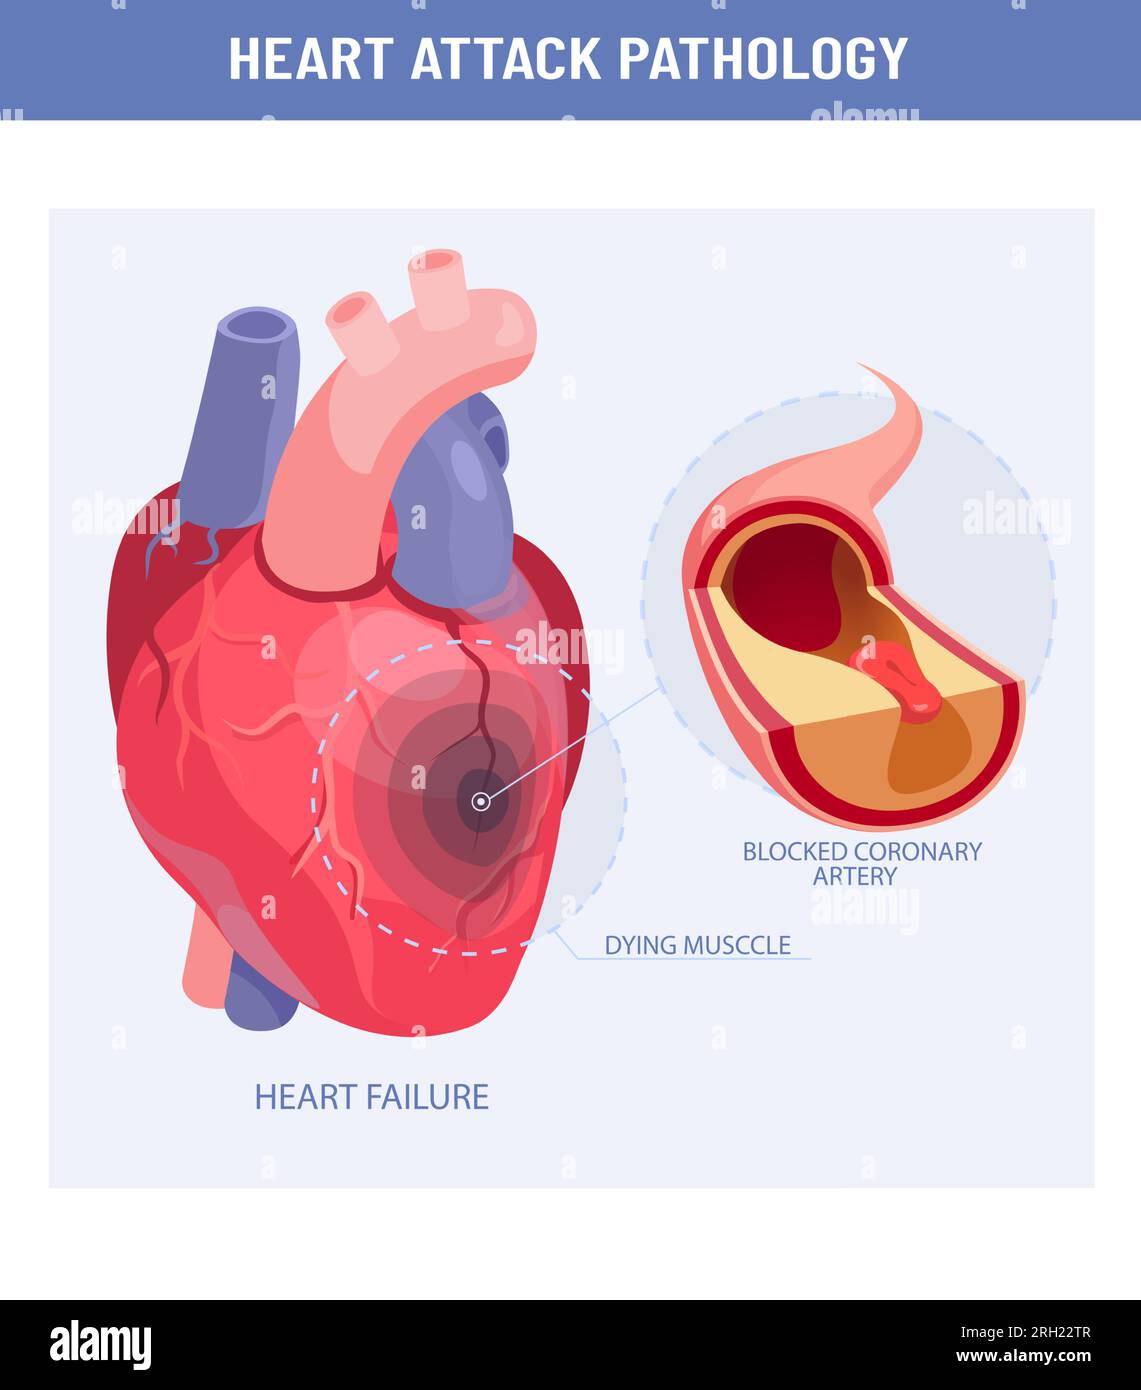 Crise cardiaque et athérosclérose illustration médicale. Vecteur d'un coeur endommagé, coupe transversale d'une artère coronaire avec plaque athéroscléreuse Illustration de Vecteur